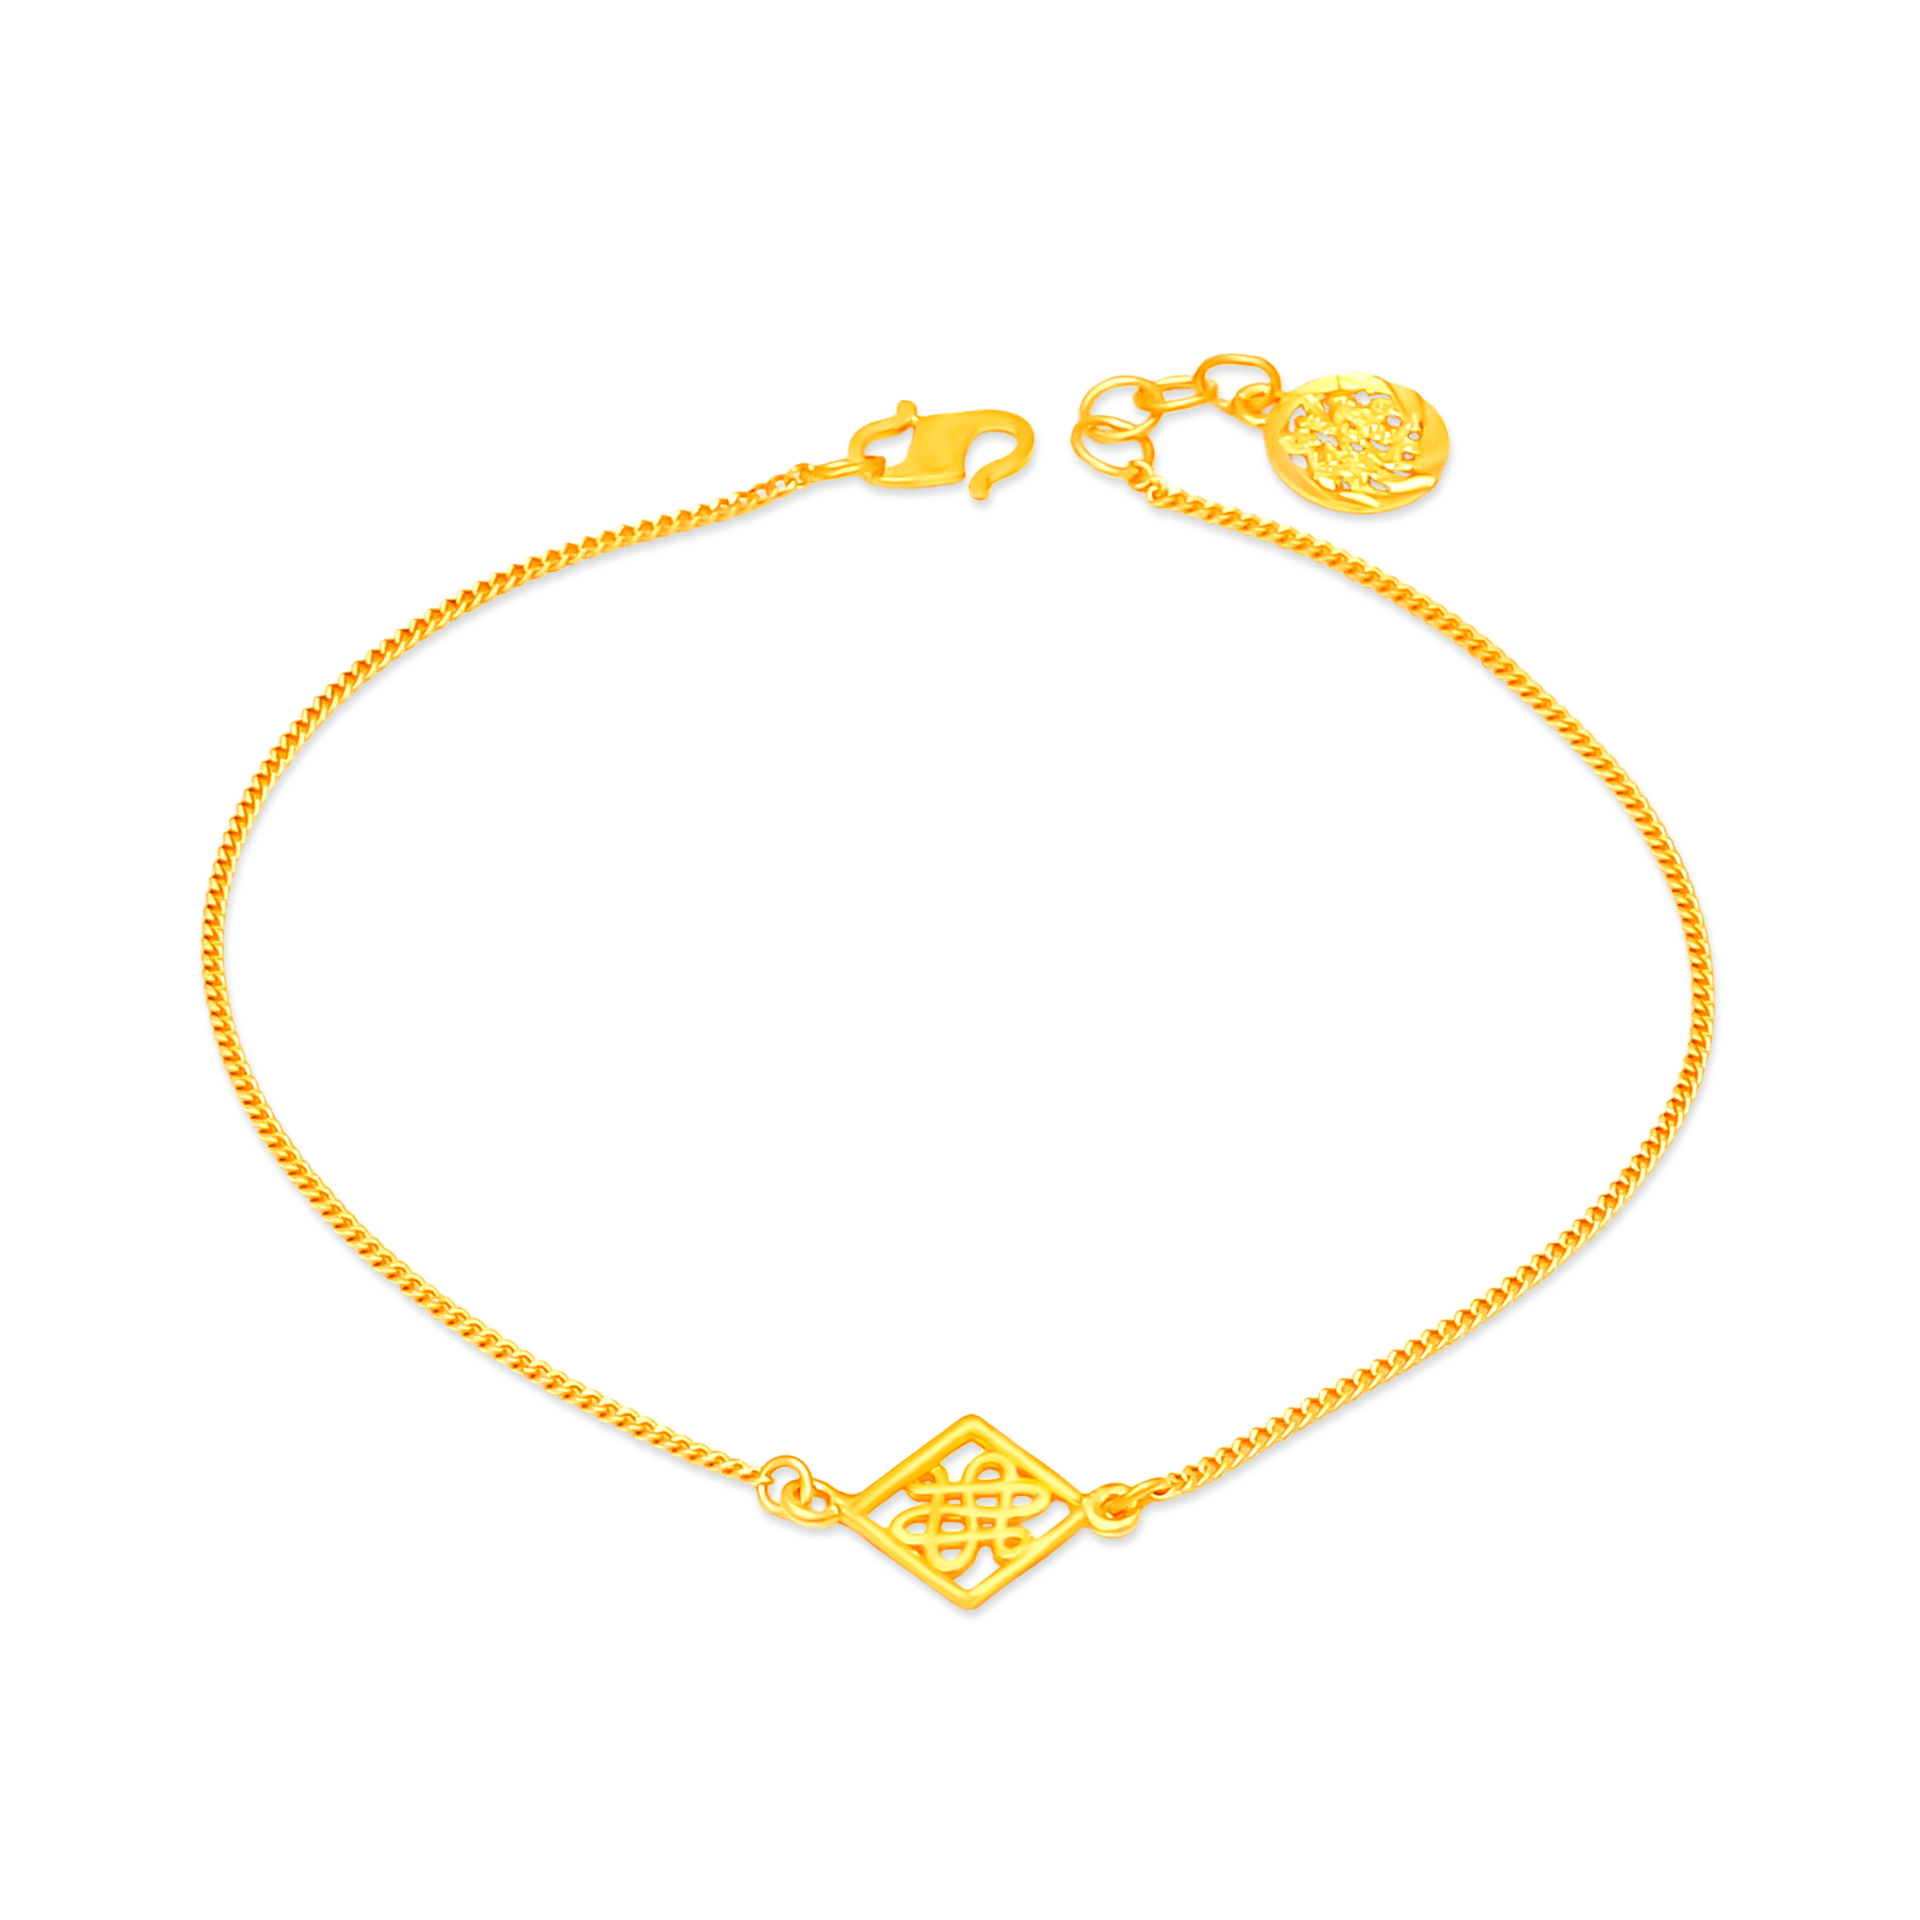 TAKA Jewellery 916 Gold Bracelet with Wishful Knot - TAKA Jewellery